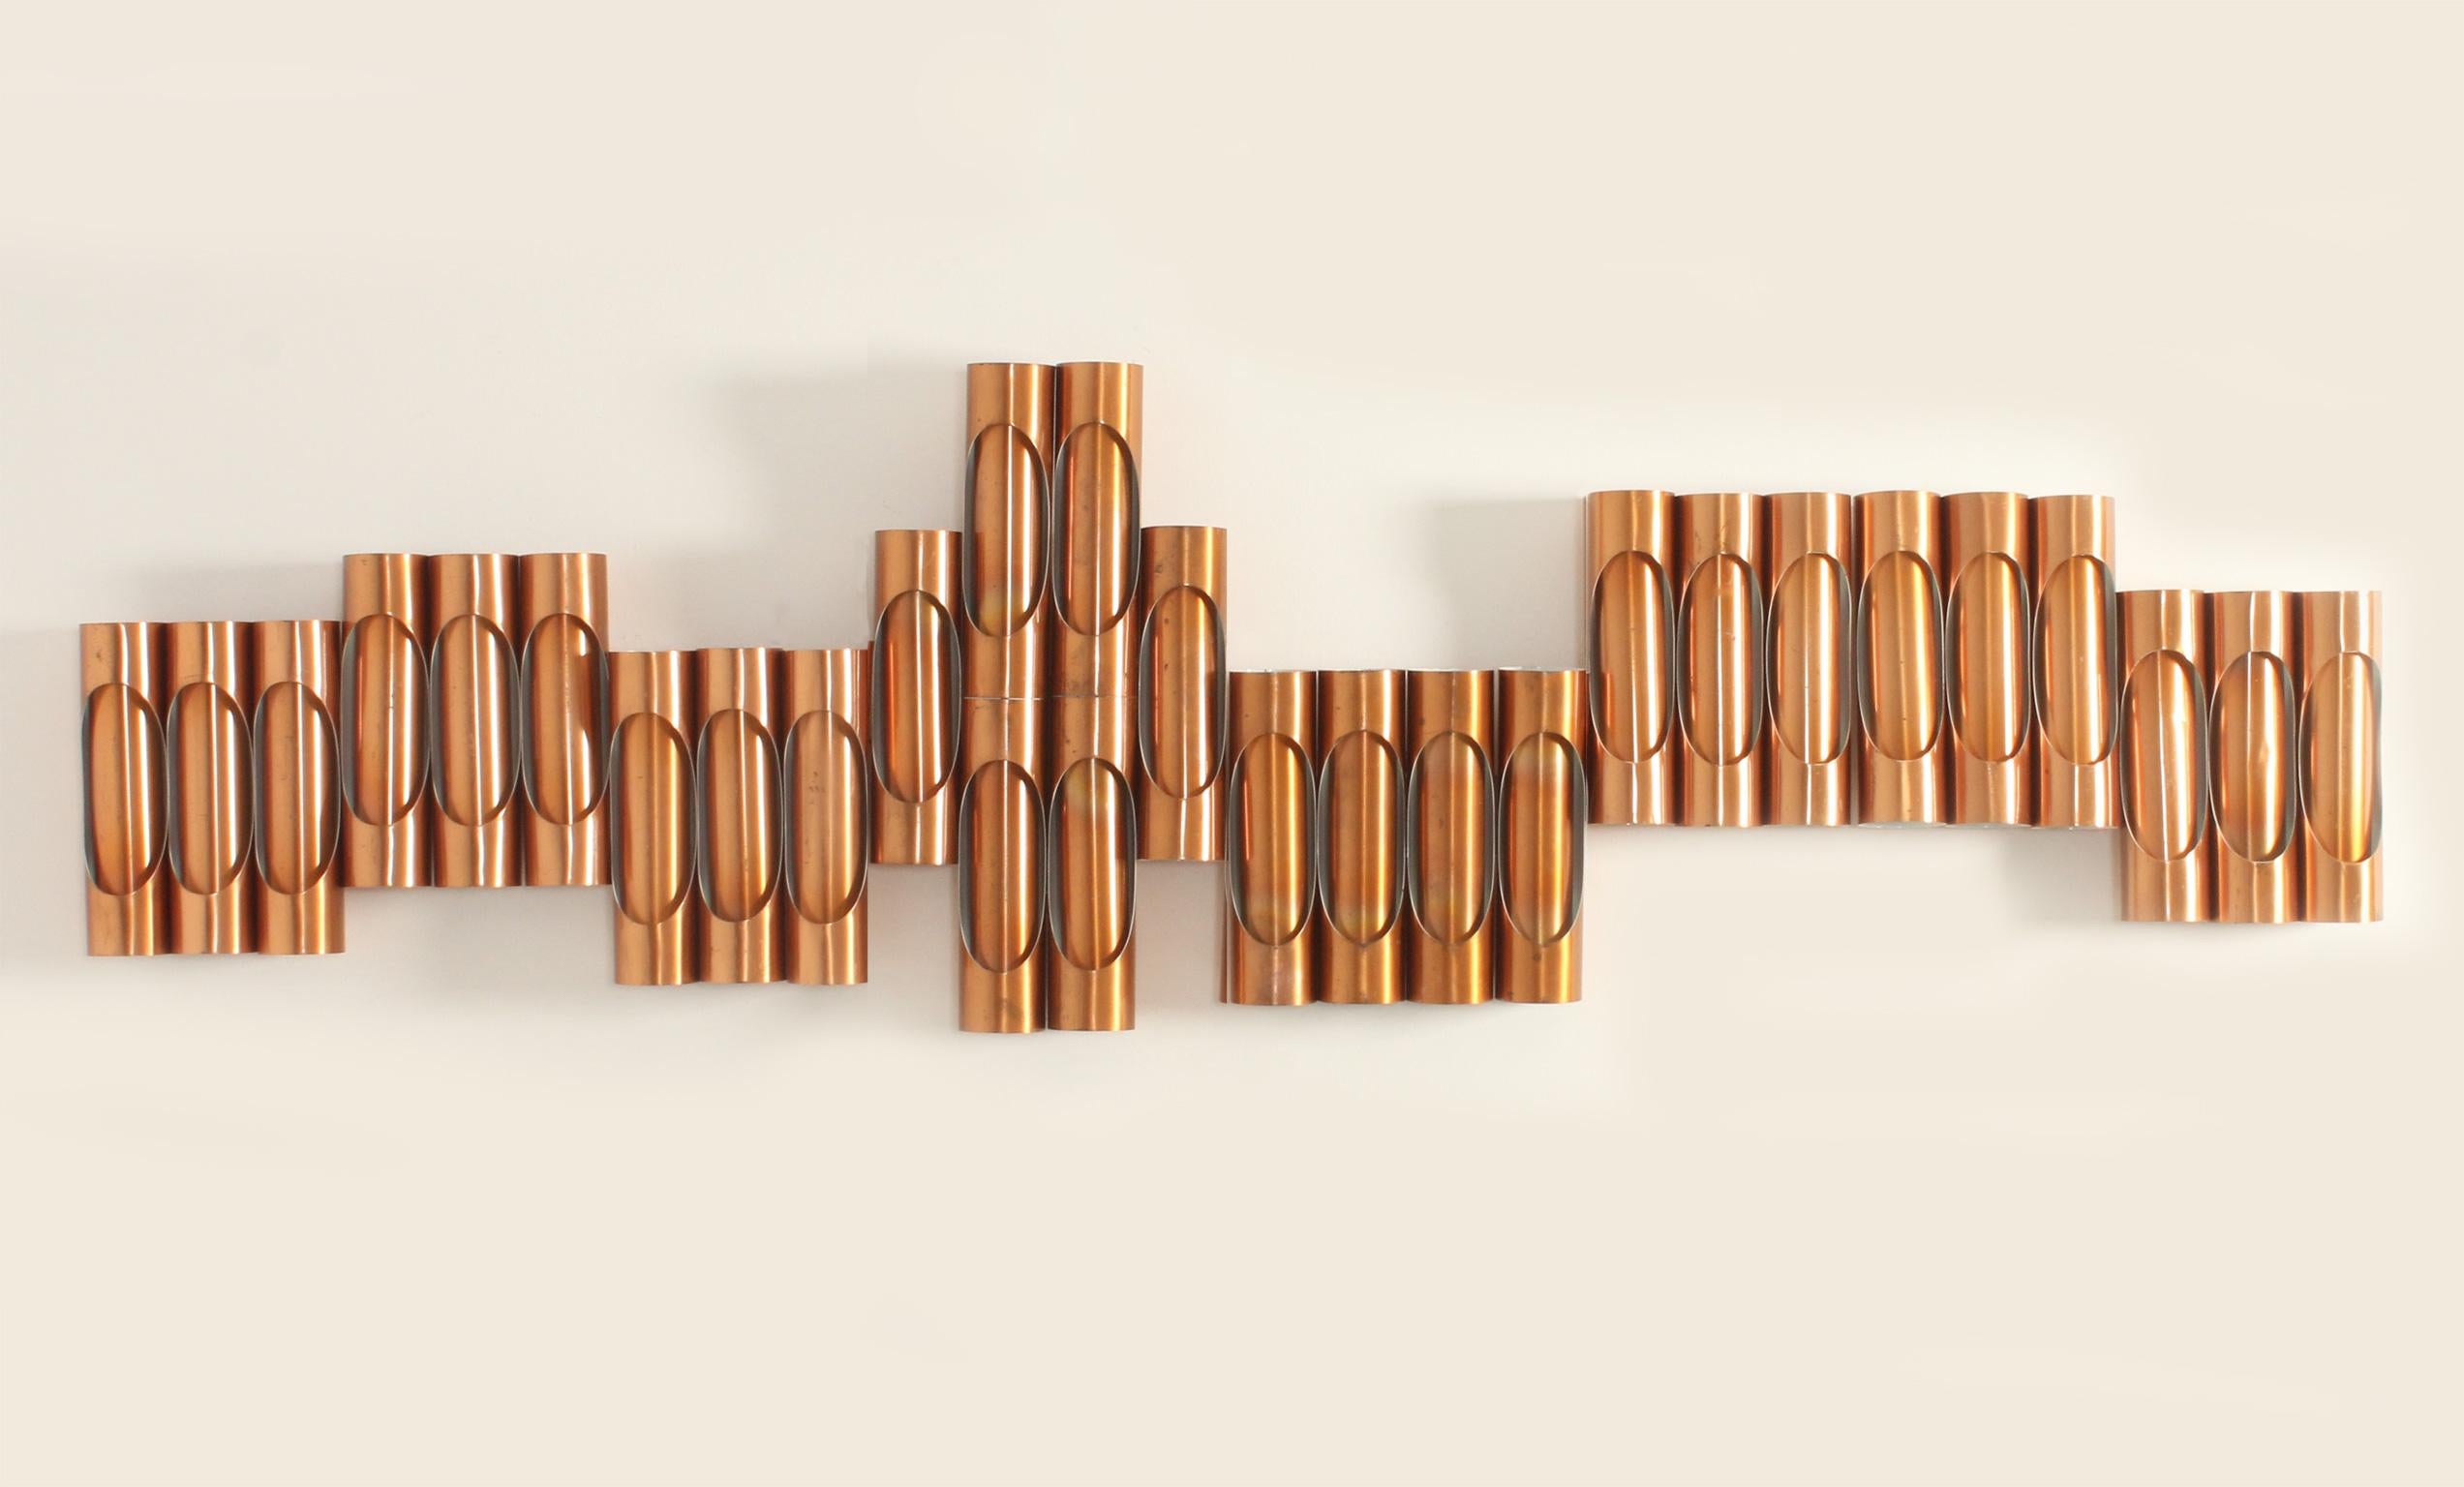 Modulare Komposition von Wandleuchten aus Kupfer aus den 1960er Jahren, Spanien. Bestehend aus 28 Wandleuchten in verschiedenen Sets, einer Wandleuchte mit doppelter Höhe und sechs Elementen (33 B. x 9 T. x 61 H.), einer Wandleuchte mit vier